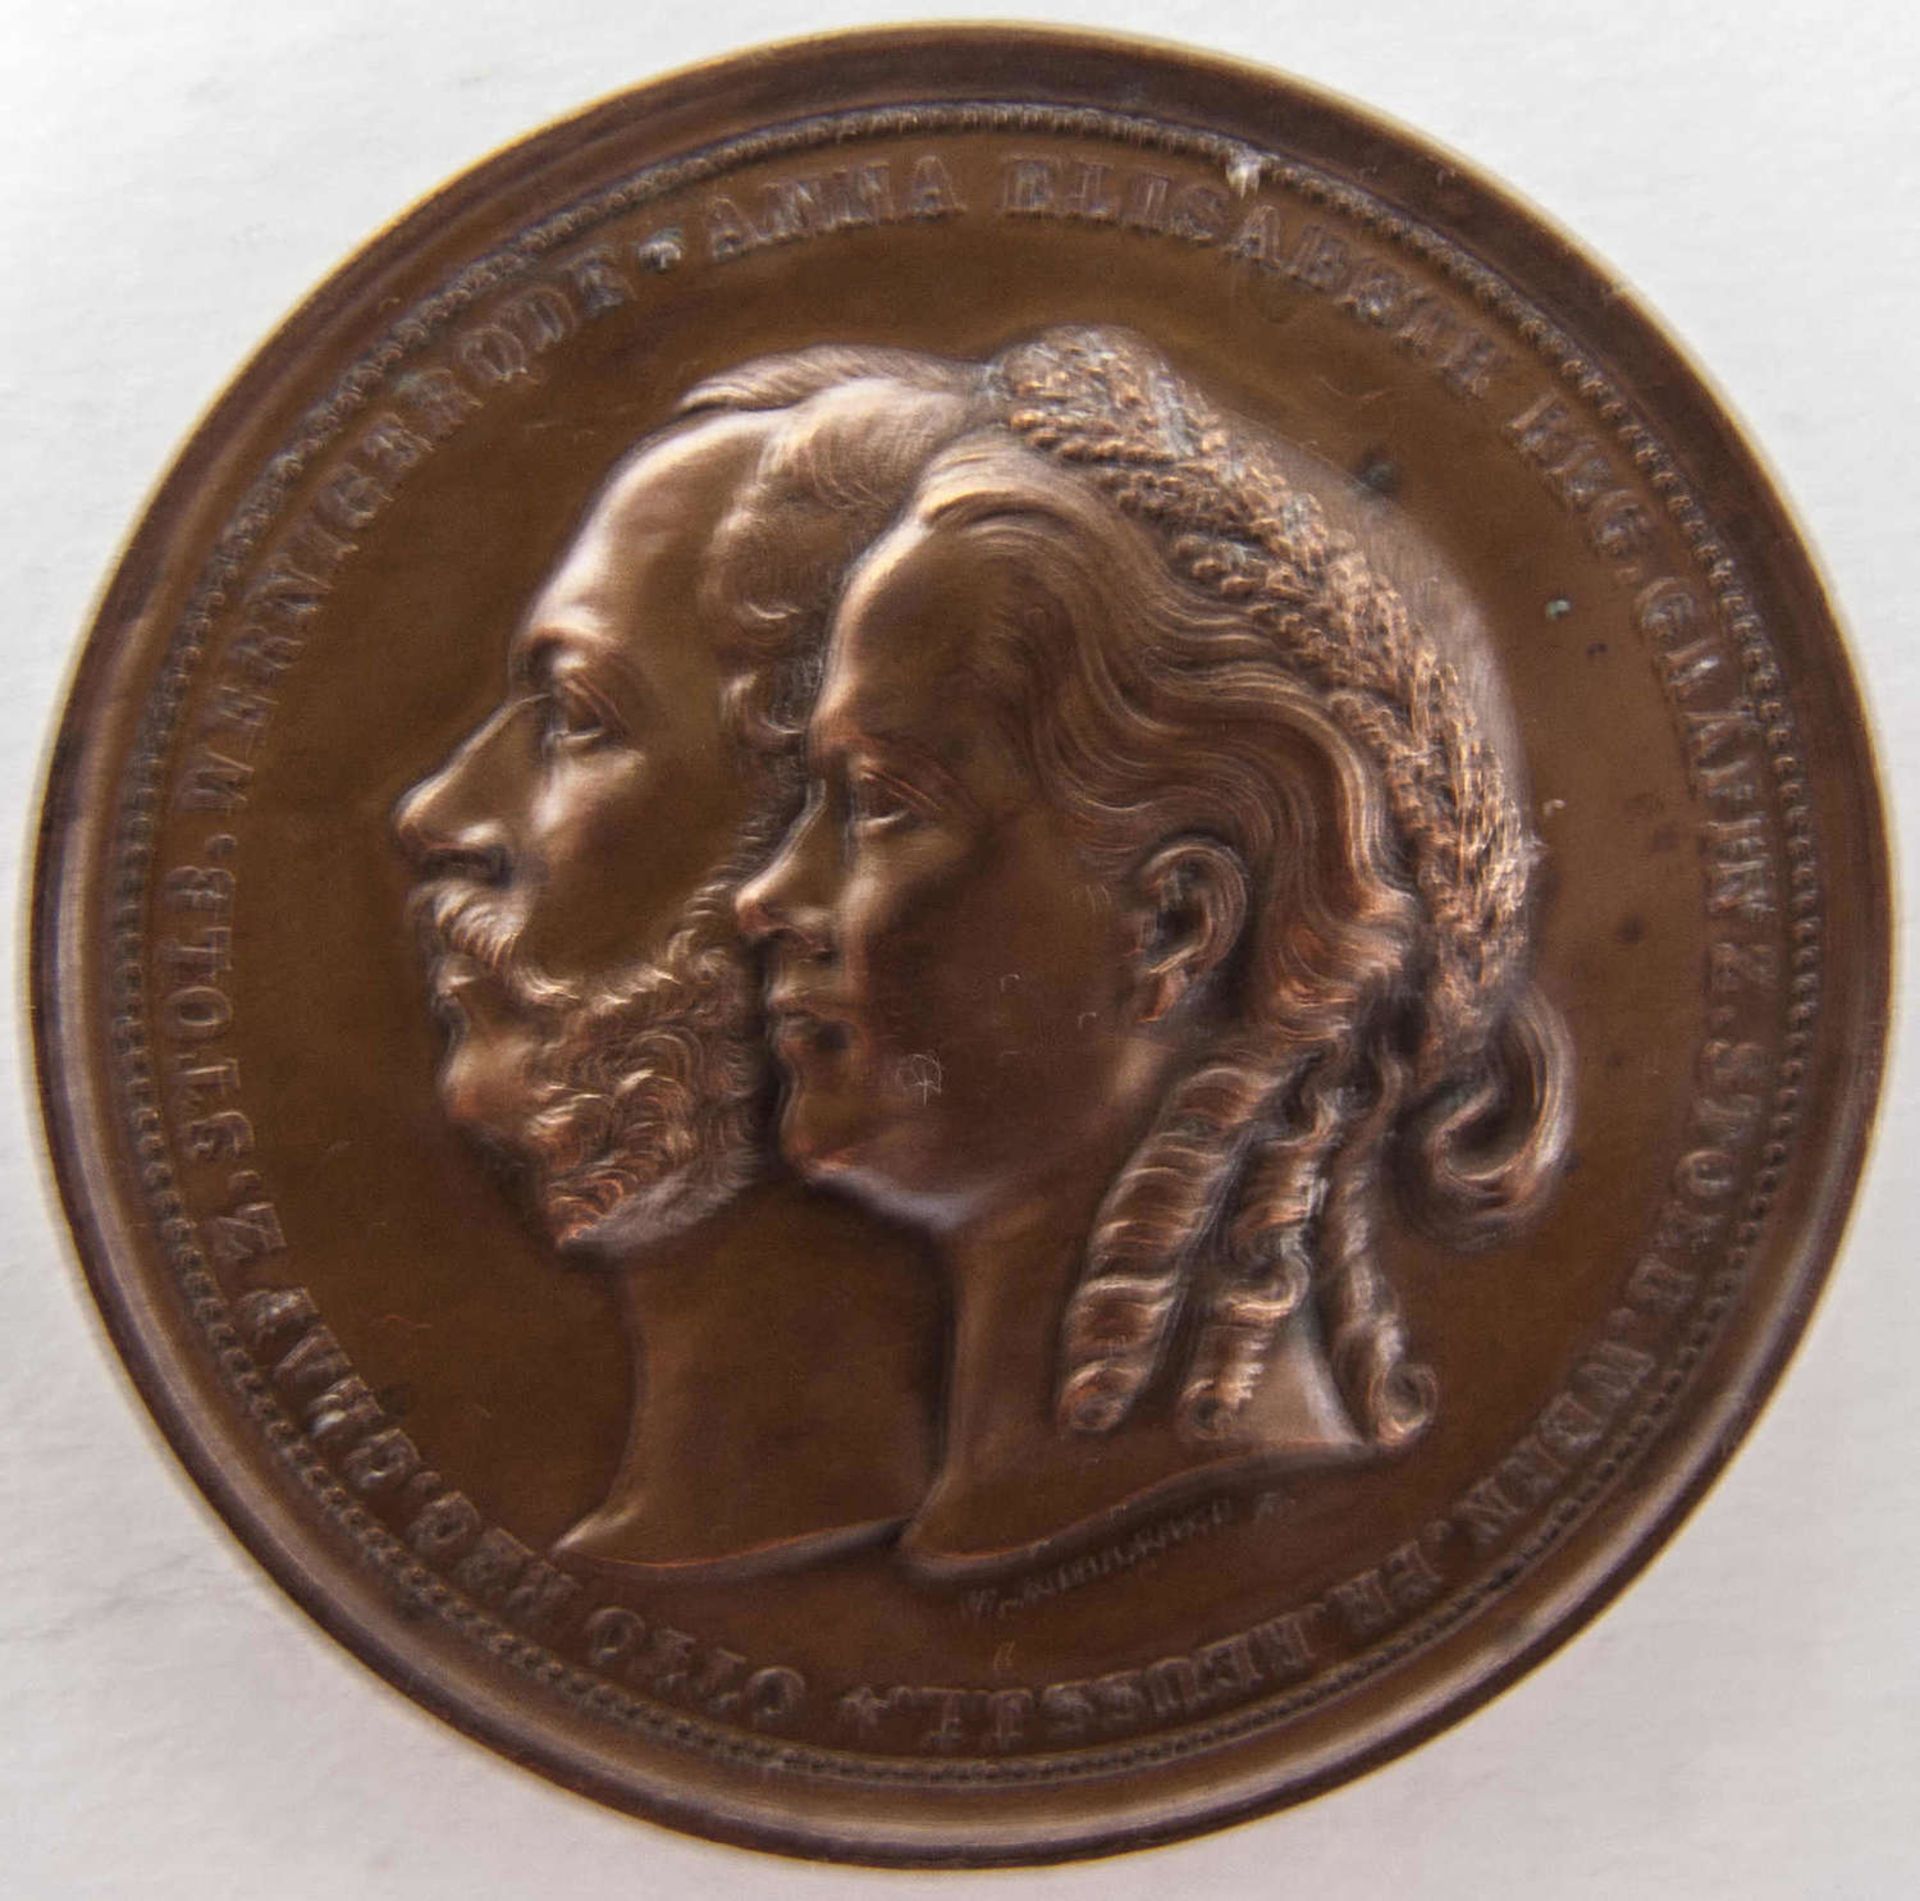 Hochzeitsmedaille Otto und Anna zu Stolberg - Werningerode am 22. August 1863. Bronze.